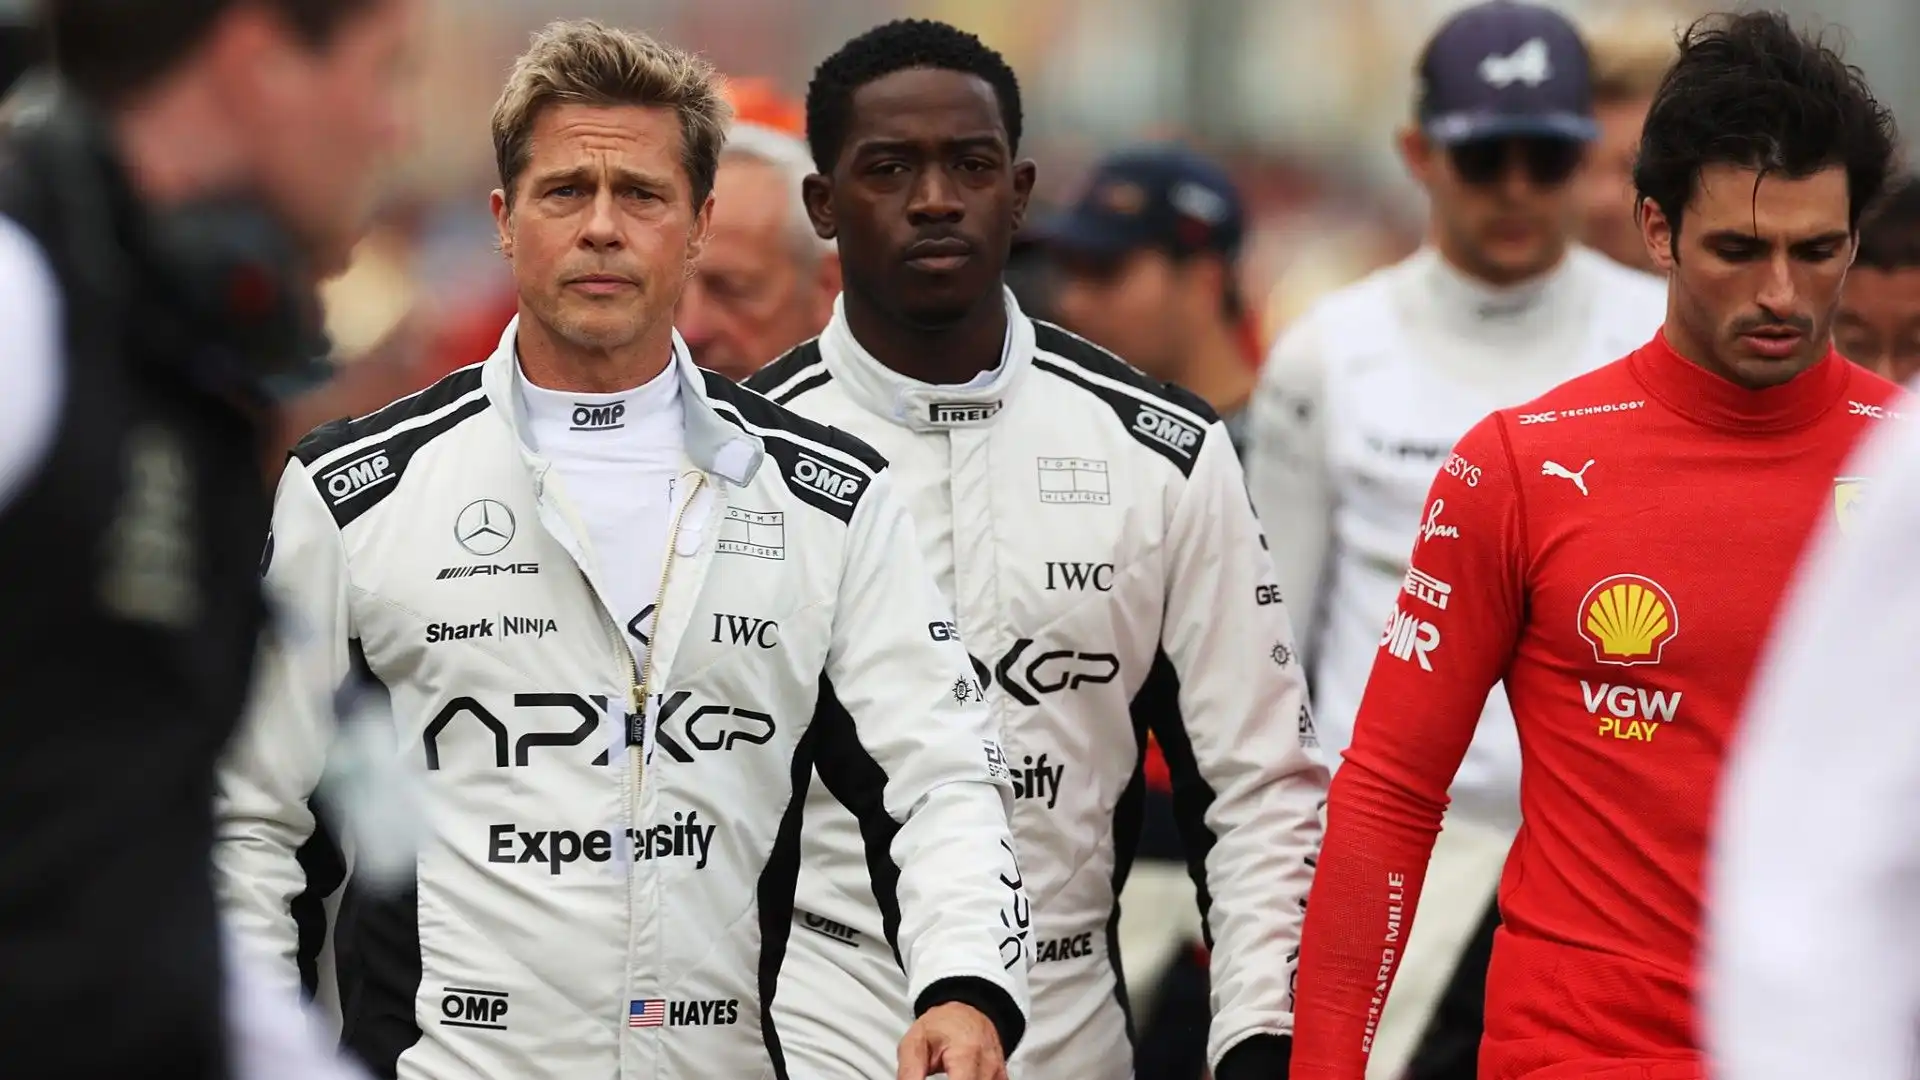 Nel film Brad Pitt sarà un ex pilota che torna allo sport con un immaginario team di F1